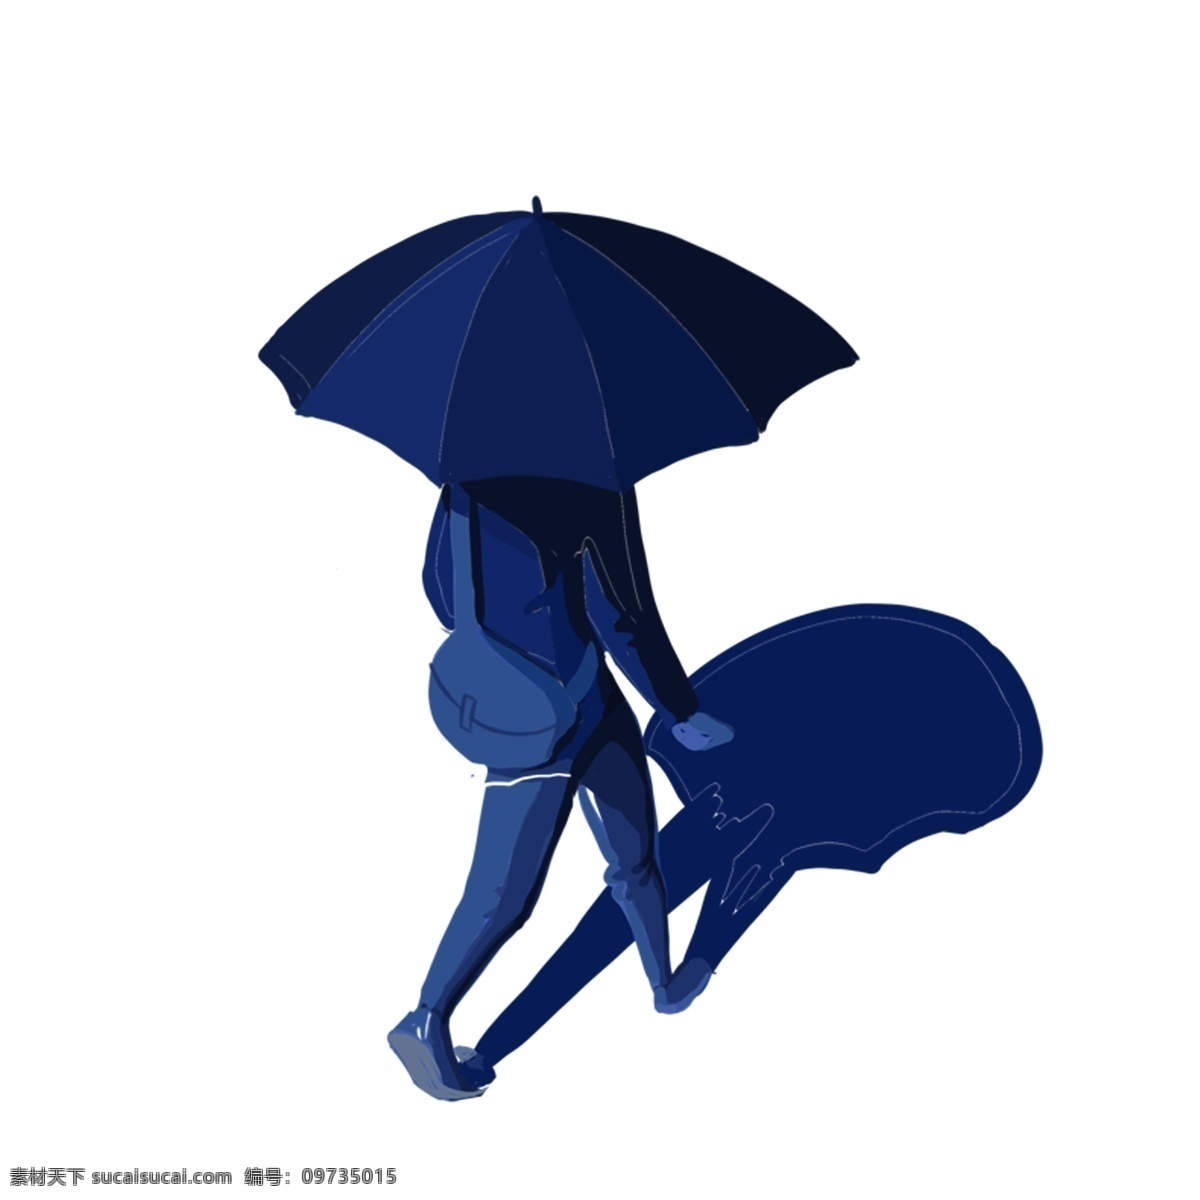 一个 雨 中 散步 人 免 抠 图 免抠图 剪影 人物 创意 背着包的人 彩色剪影 蓝色人物剪影